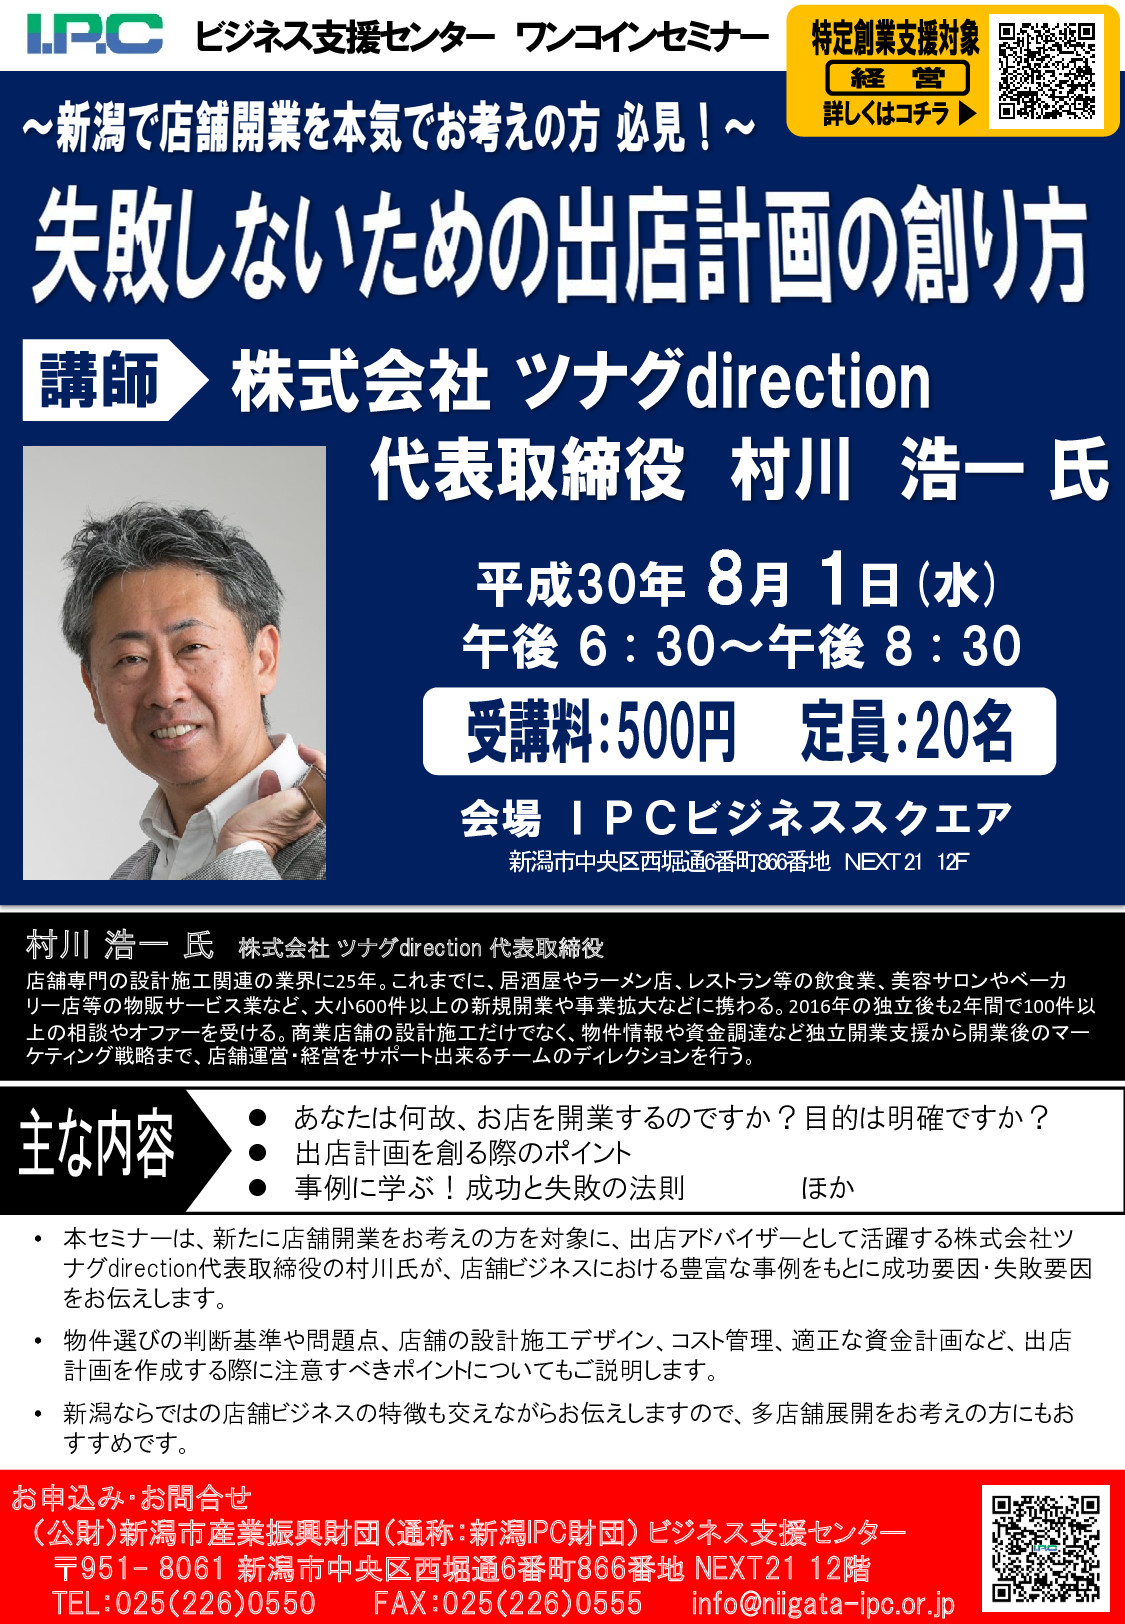 新潟IPC財団様主催のセミナーに講師として招かれます。